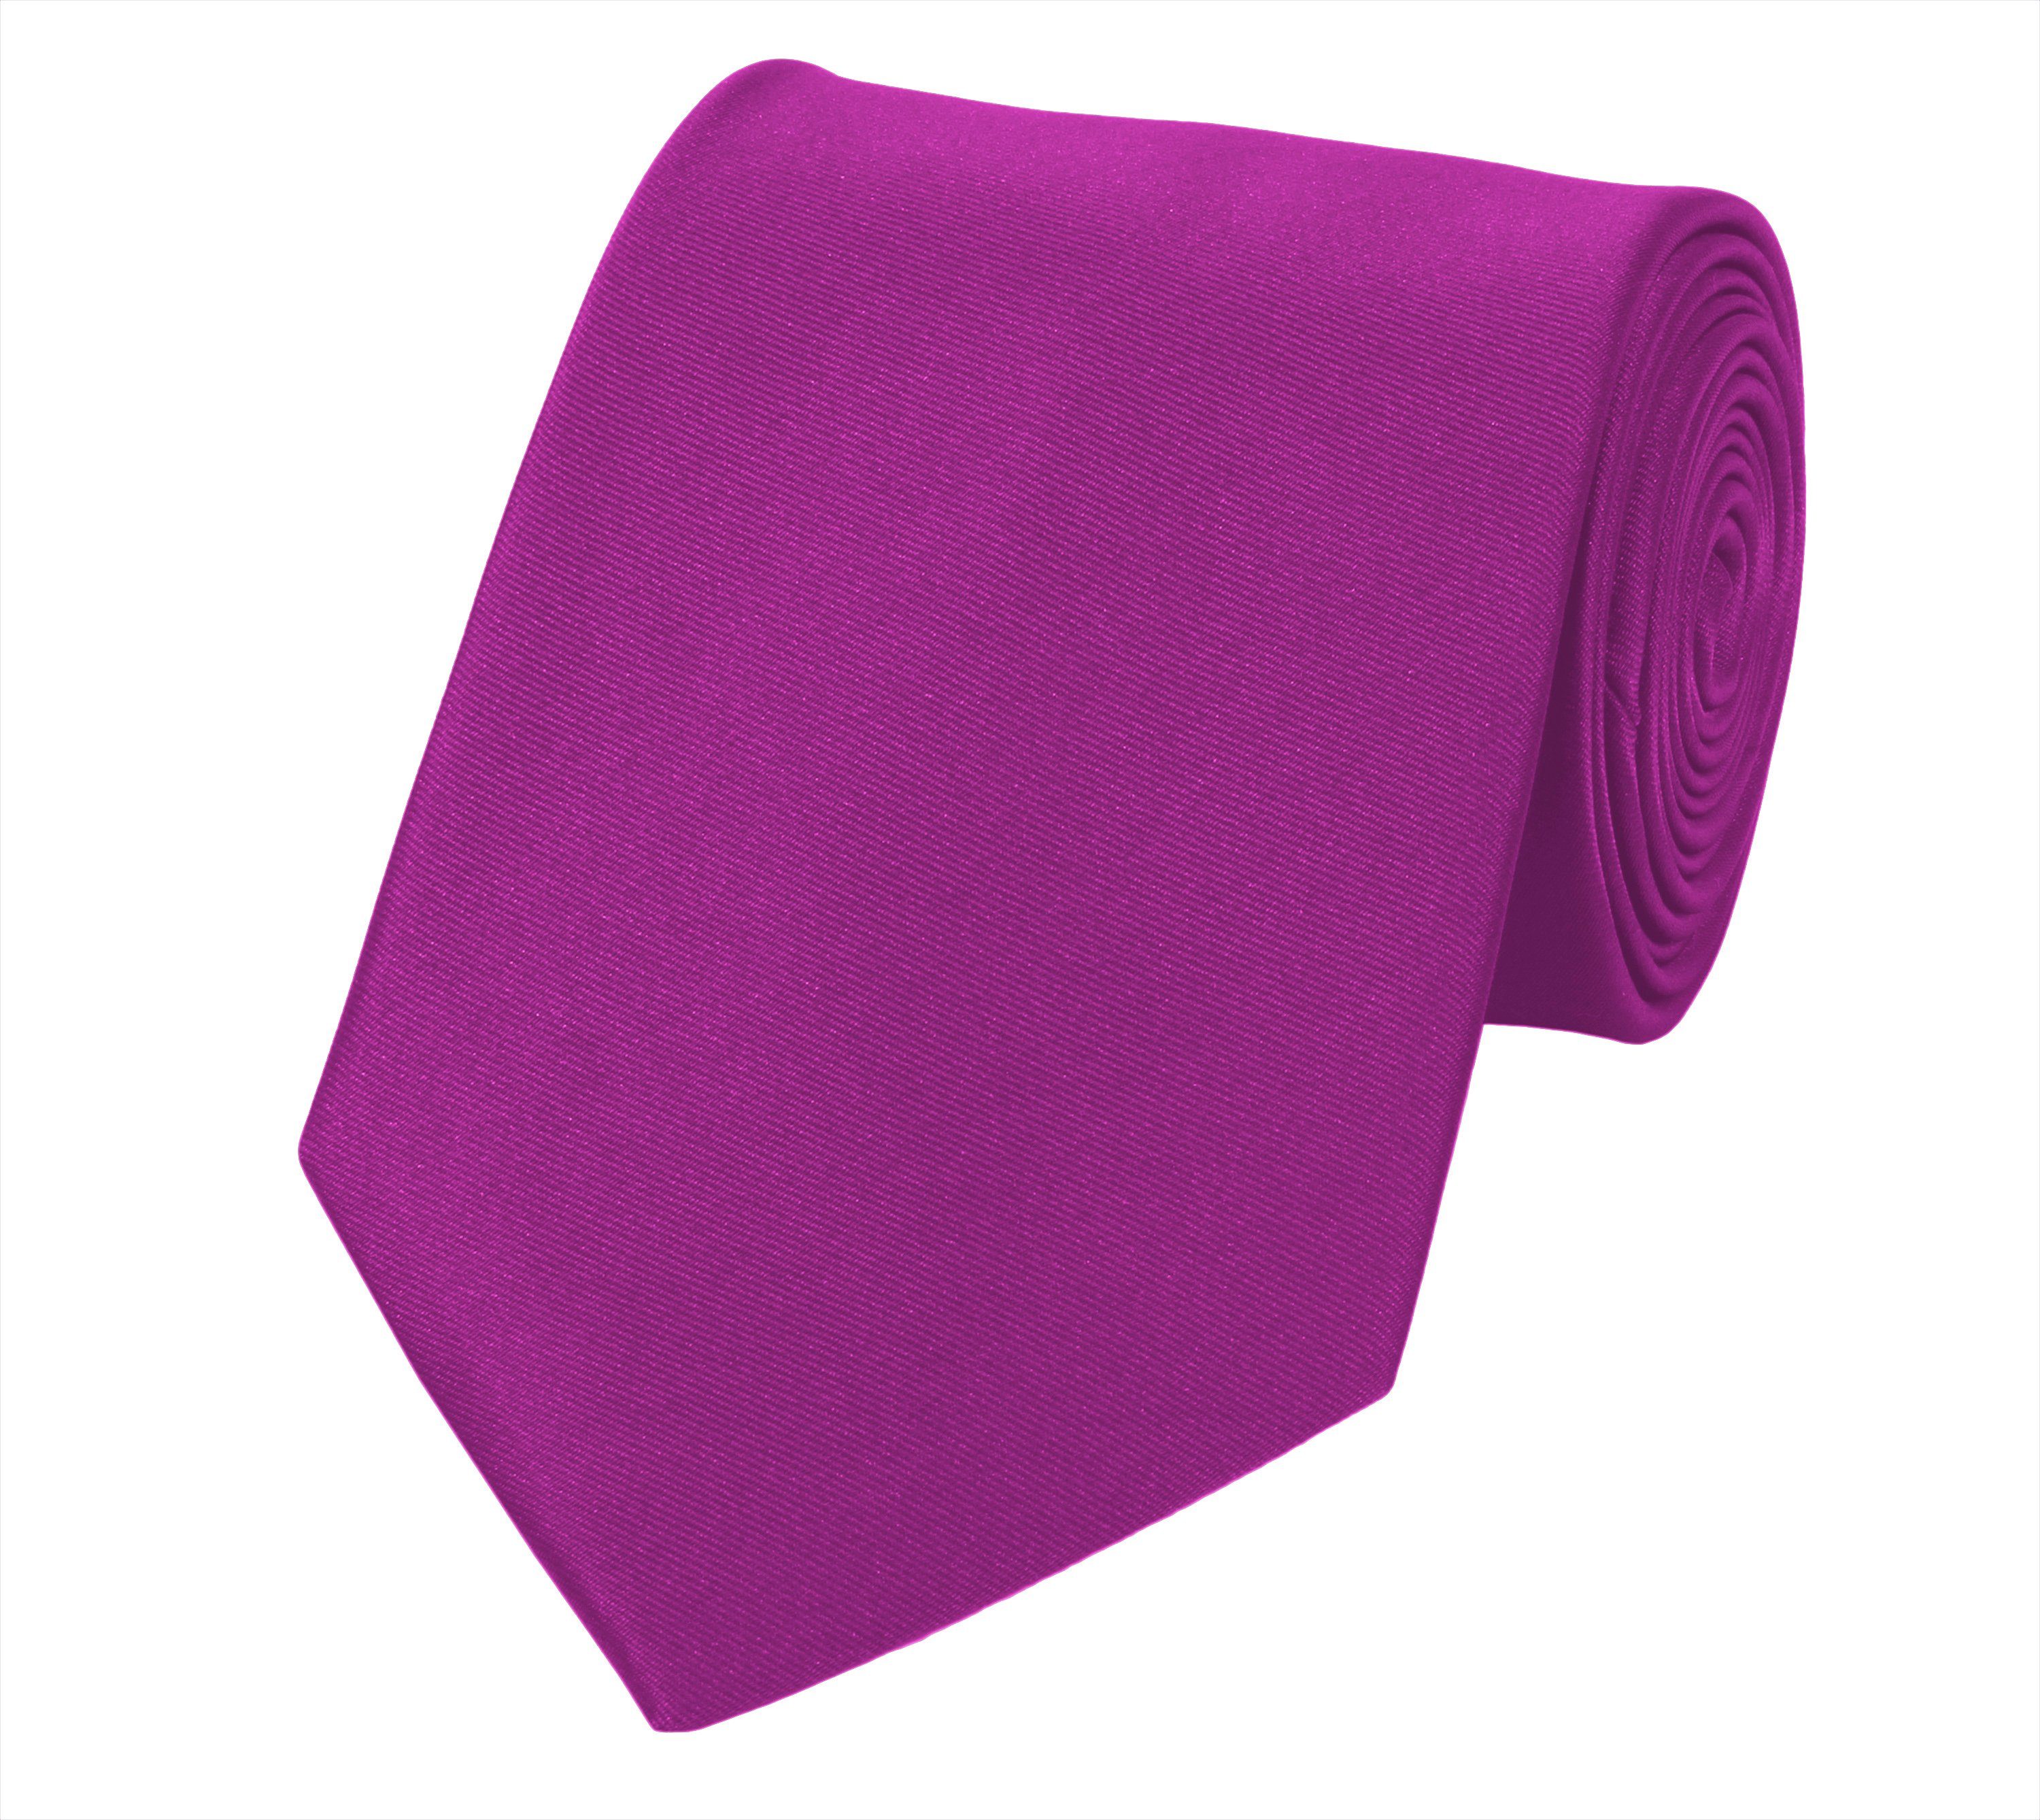 Fabio Rosa Farini verschiedene Breit Pink Box, Schlips (ohne (8cm), Männer - - Pink Krawatte 8cm Herren Rosa Krawatte in Unifarben) Lilly